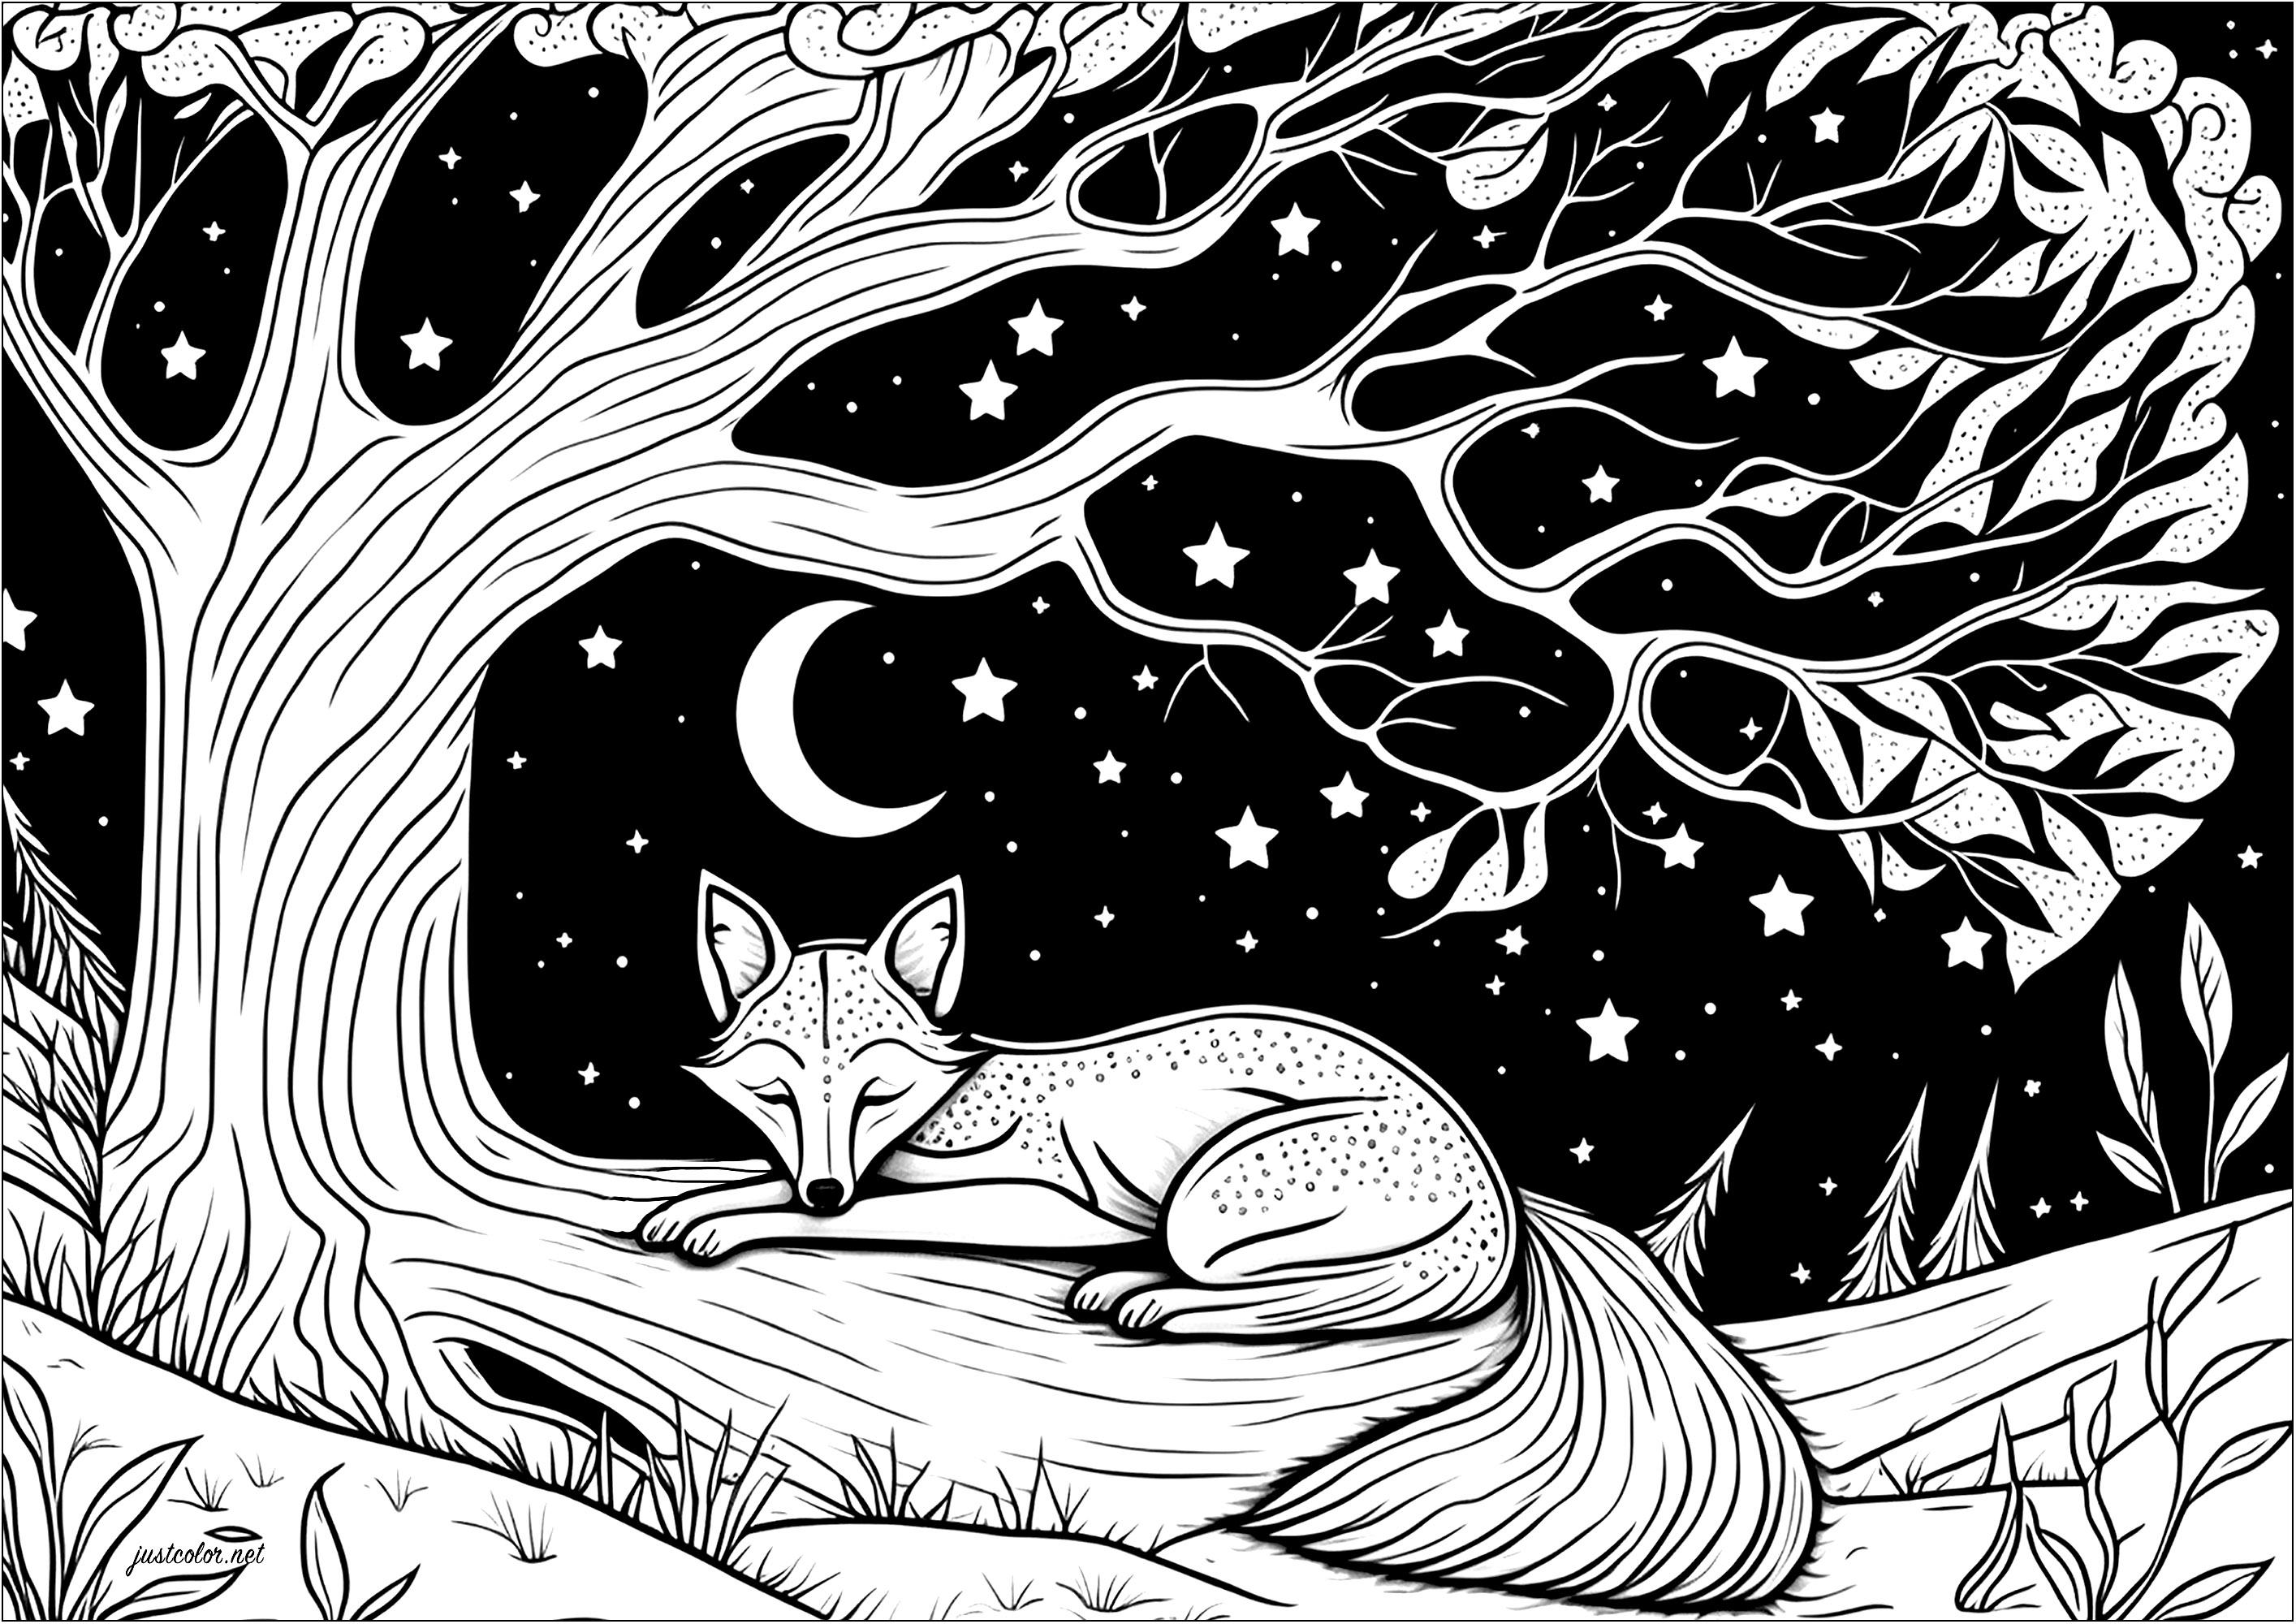 Coloriage d'un renard dormant allongé sur une branche d'arbre . Voici un renard qui dort paisiblement allongé sous un arbre magnifique. Sous ce ciel étoilé, on dirait qu'il est en train de rêver de grands aventures !, Artiste : IAsabelle